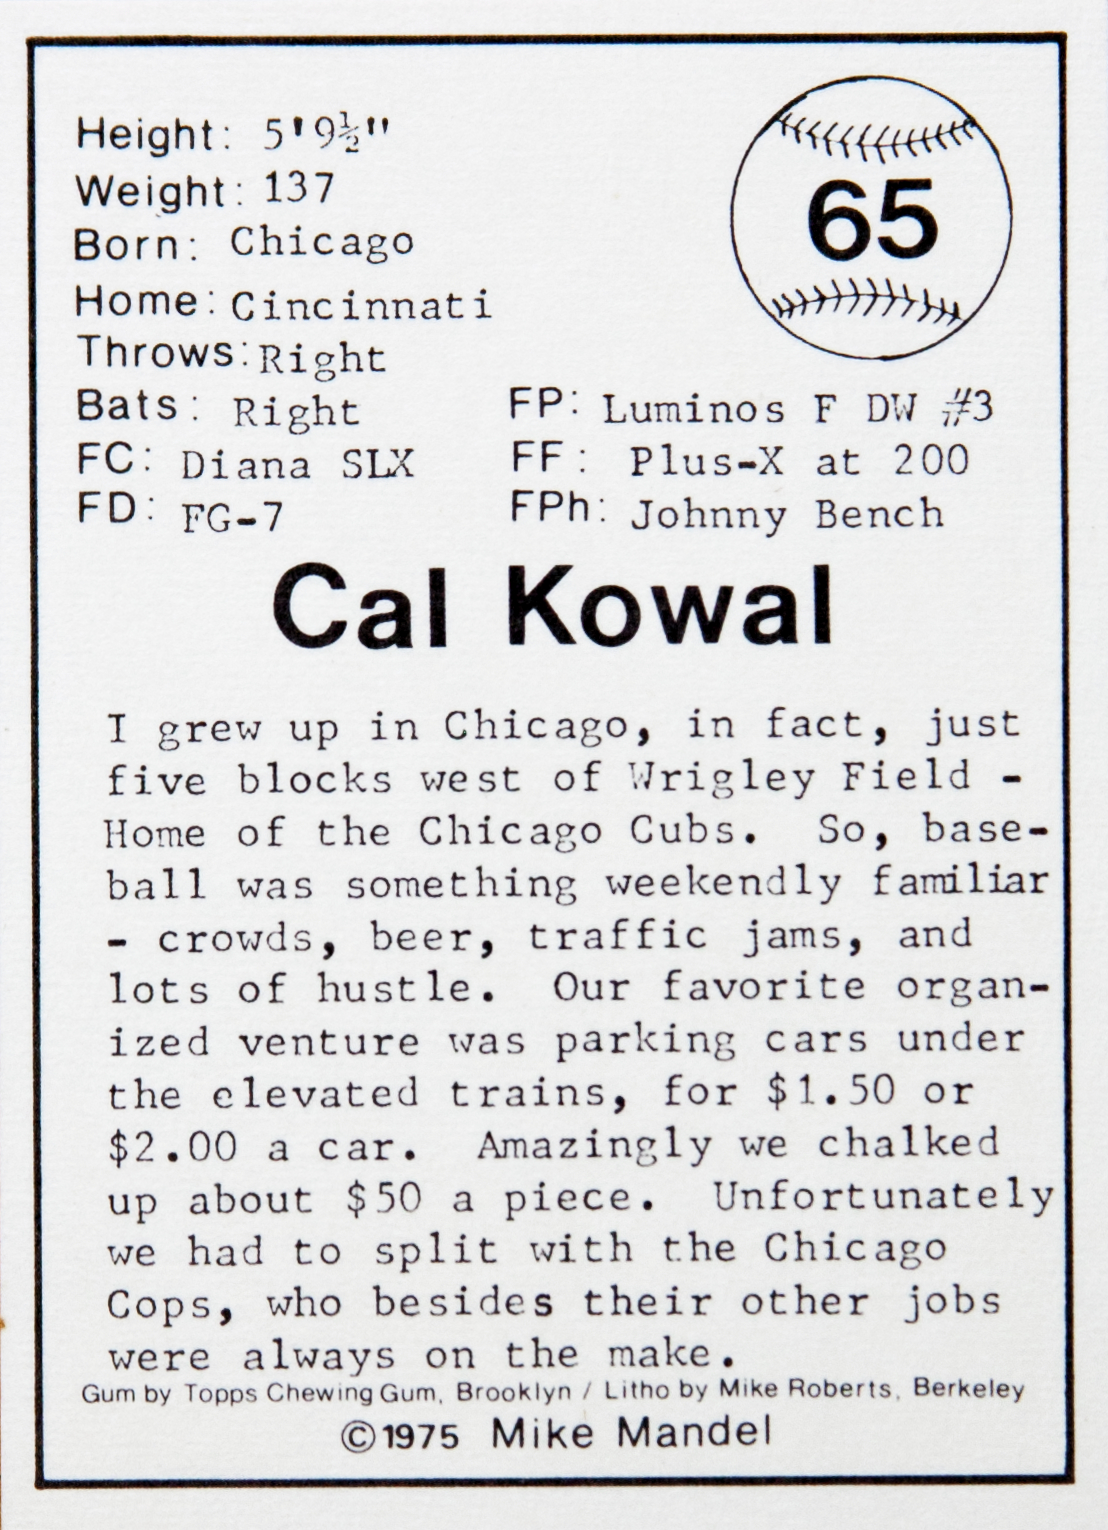 Cal Kowal